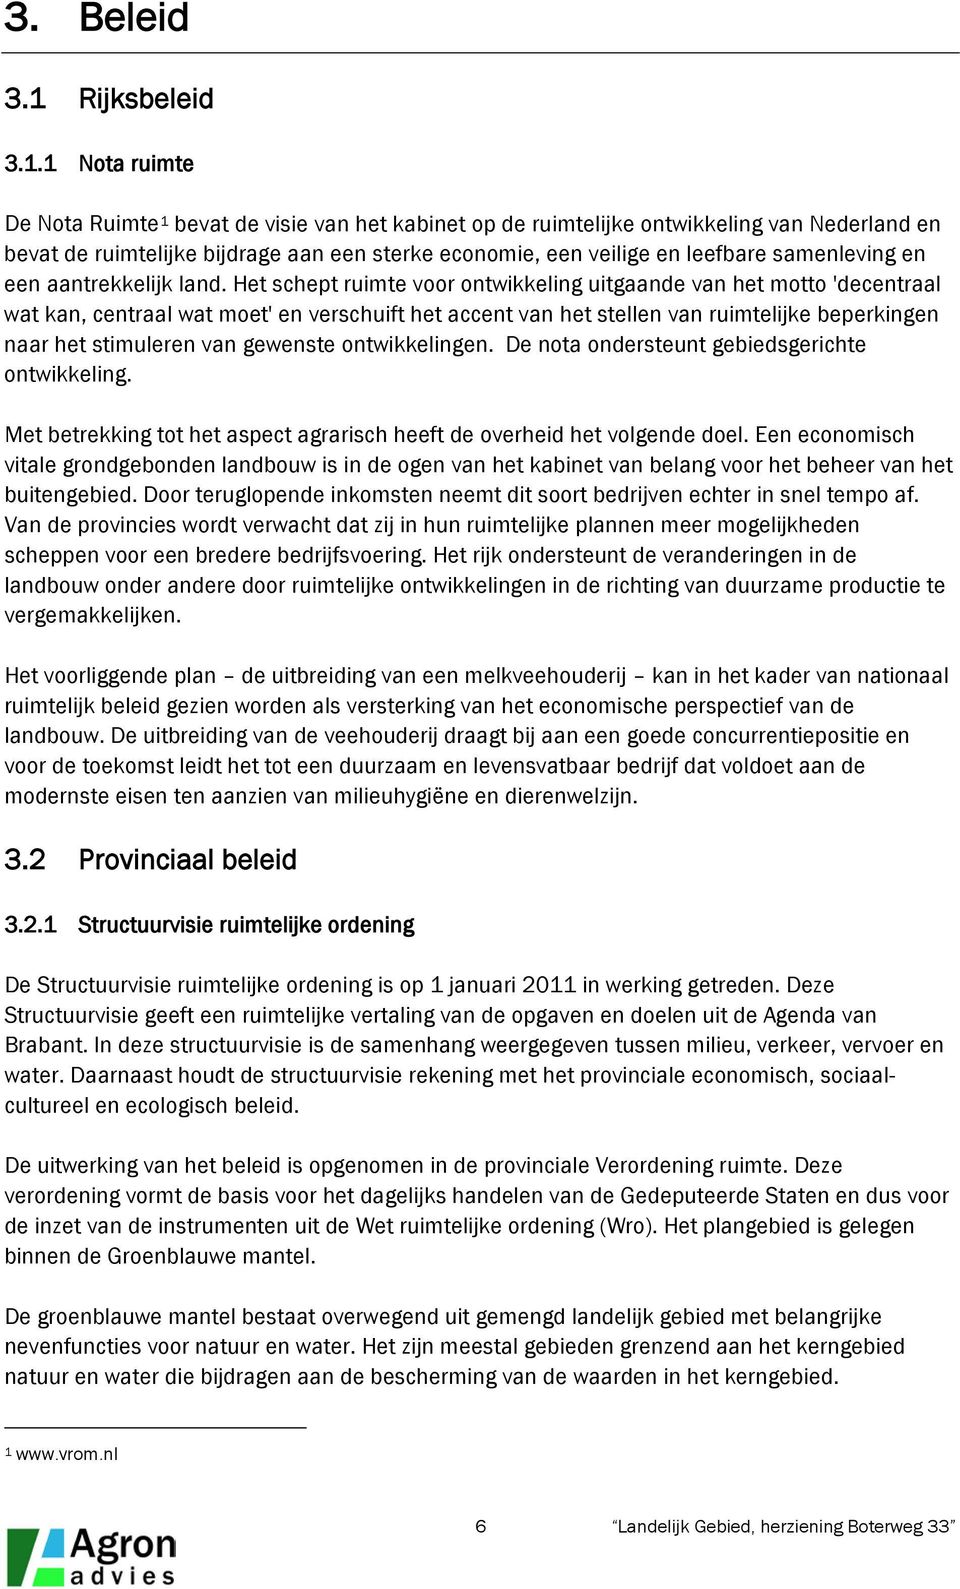 1 Nota ruimte De Nota Ruimte 1 bevat de visie van het kabinet op de ruimtelijke ontwikkeling van Nederland en bevat de ruimtelijke bijdrage aan een sterke economie, een veilige en leefbare